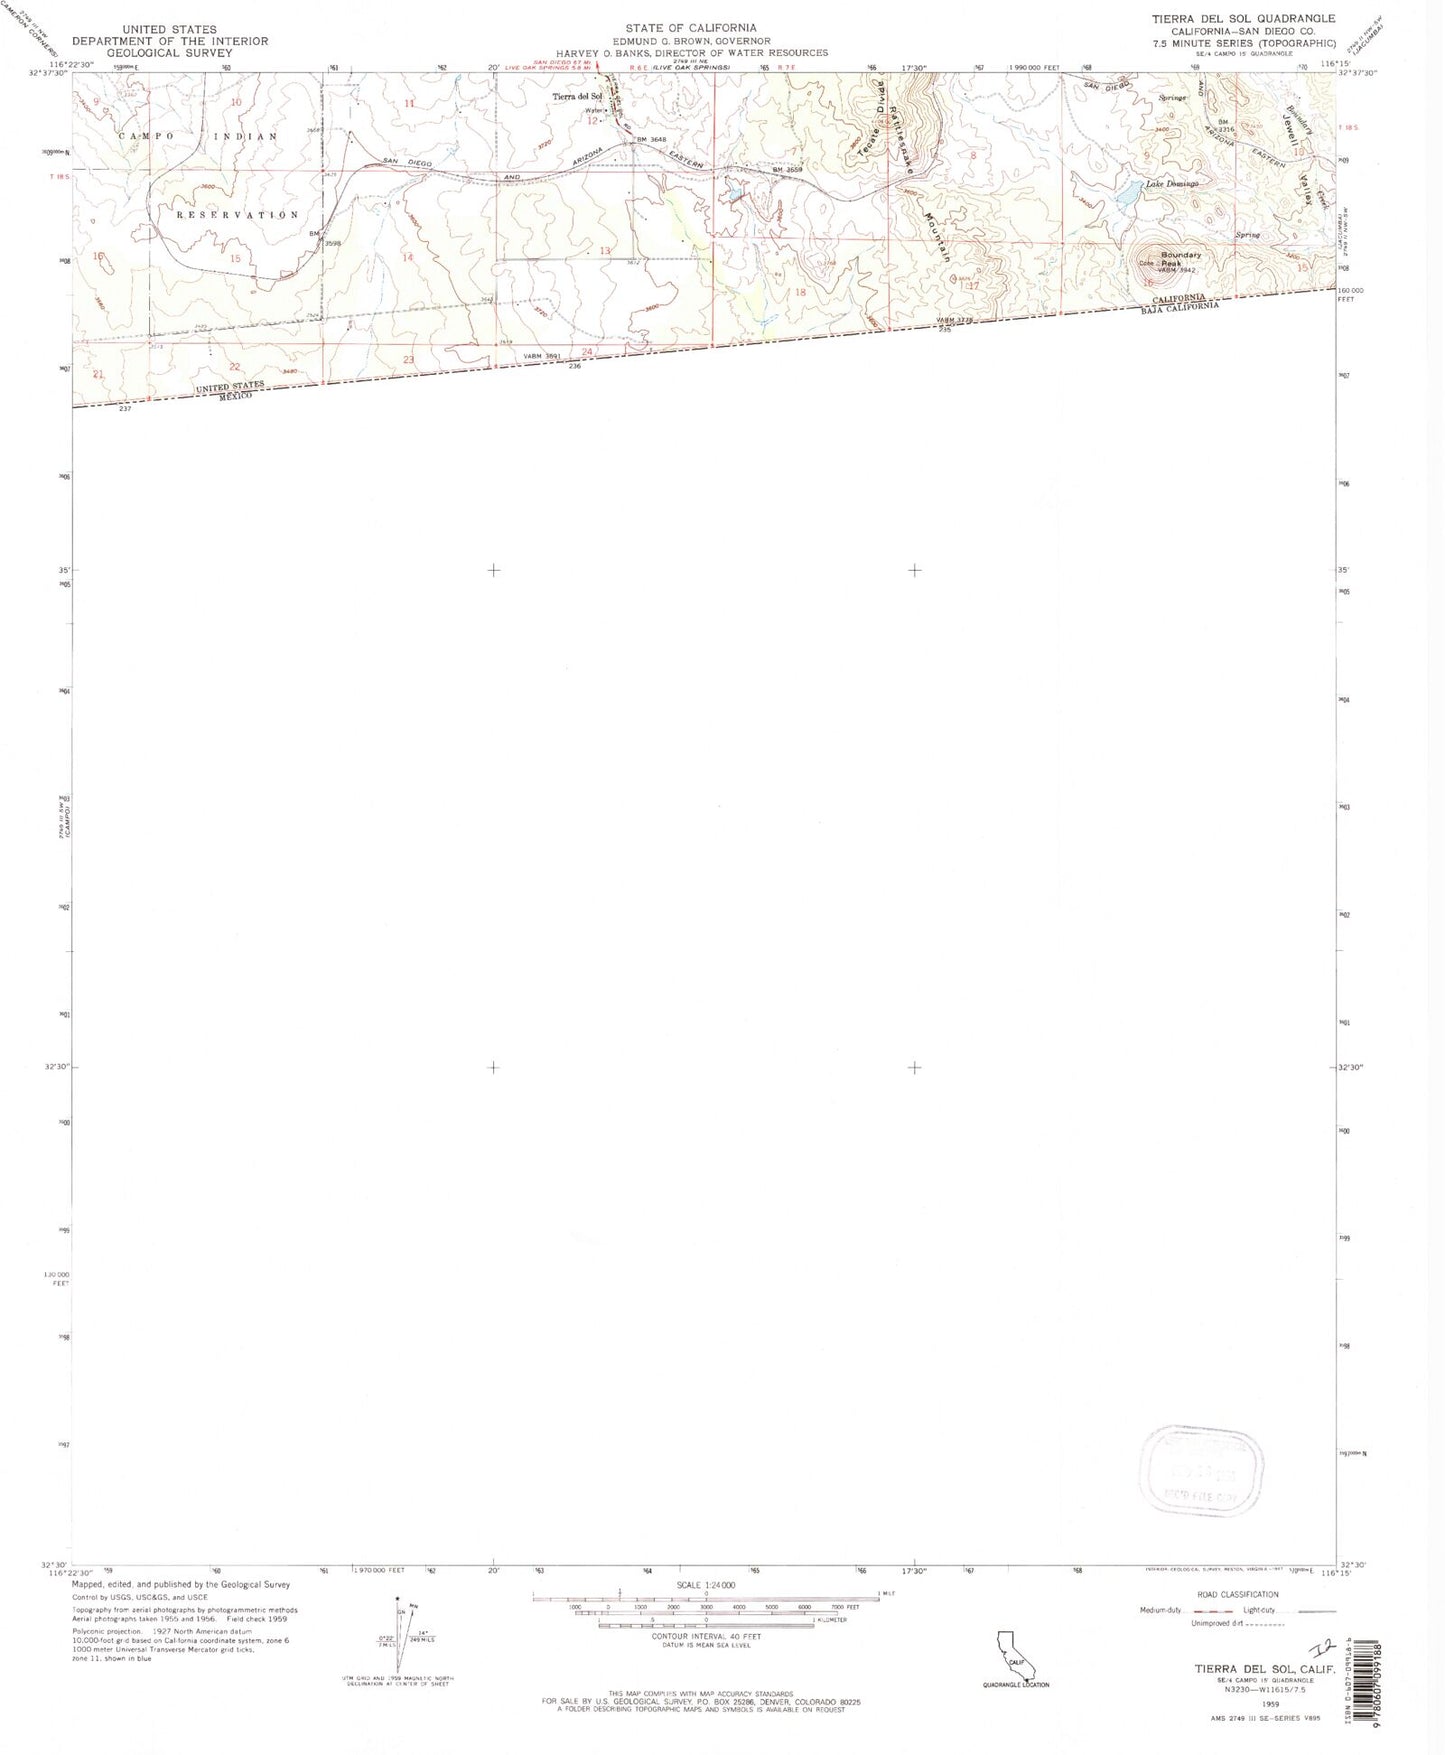 Classic USGS Tierra del Sol California 7.5'x7.5' Topo Map Image